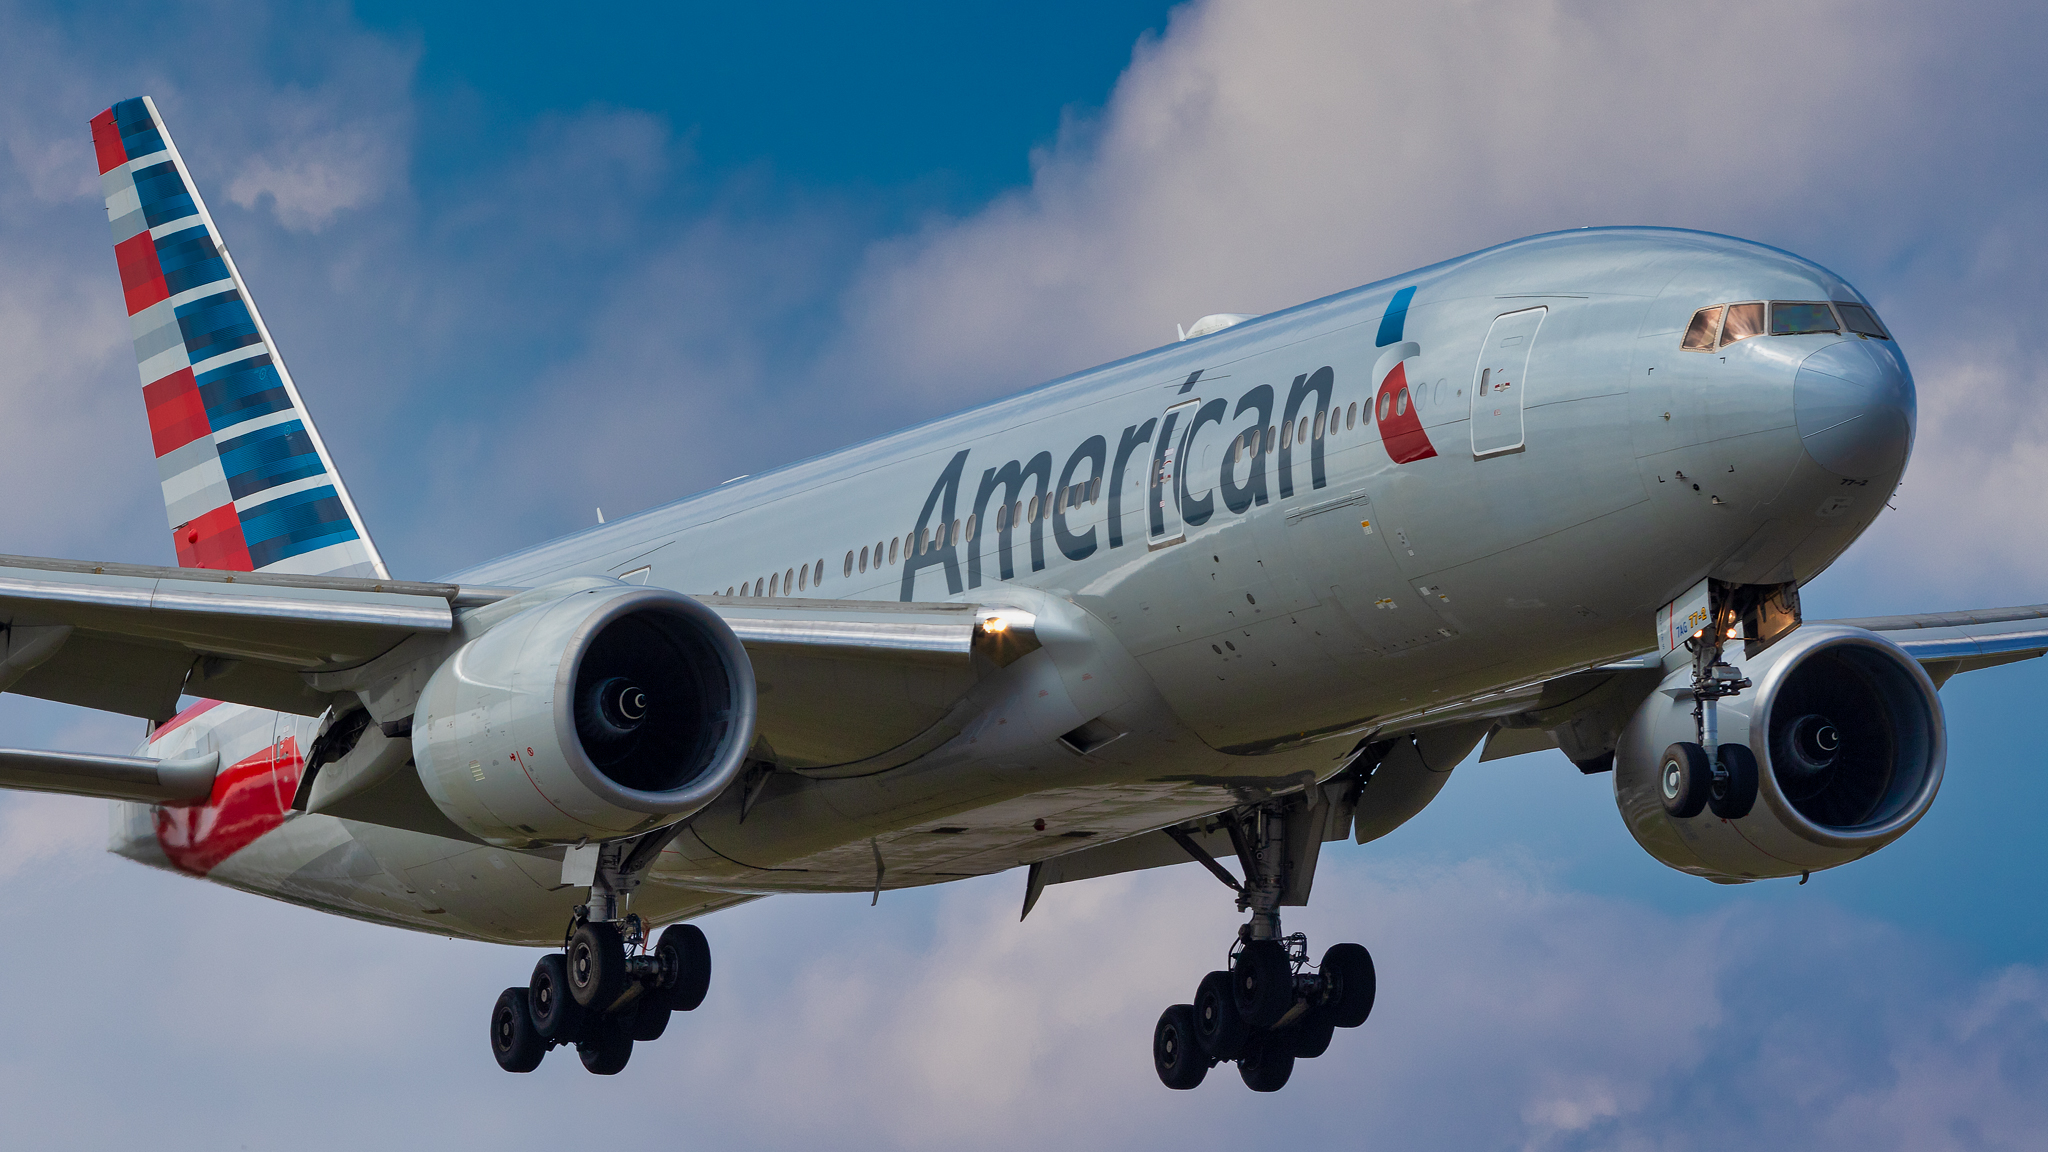 American Airlines Flight Makes Emergency Landing in Tel Aviv